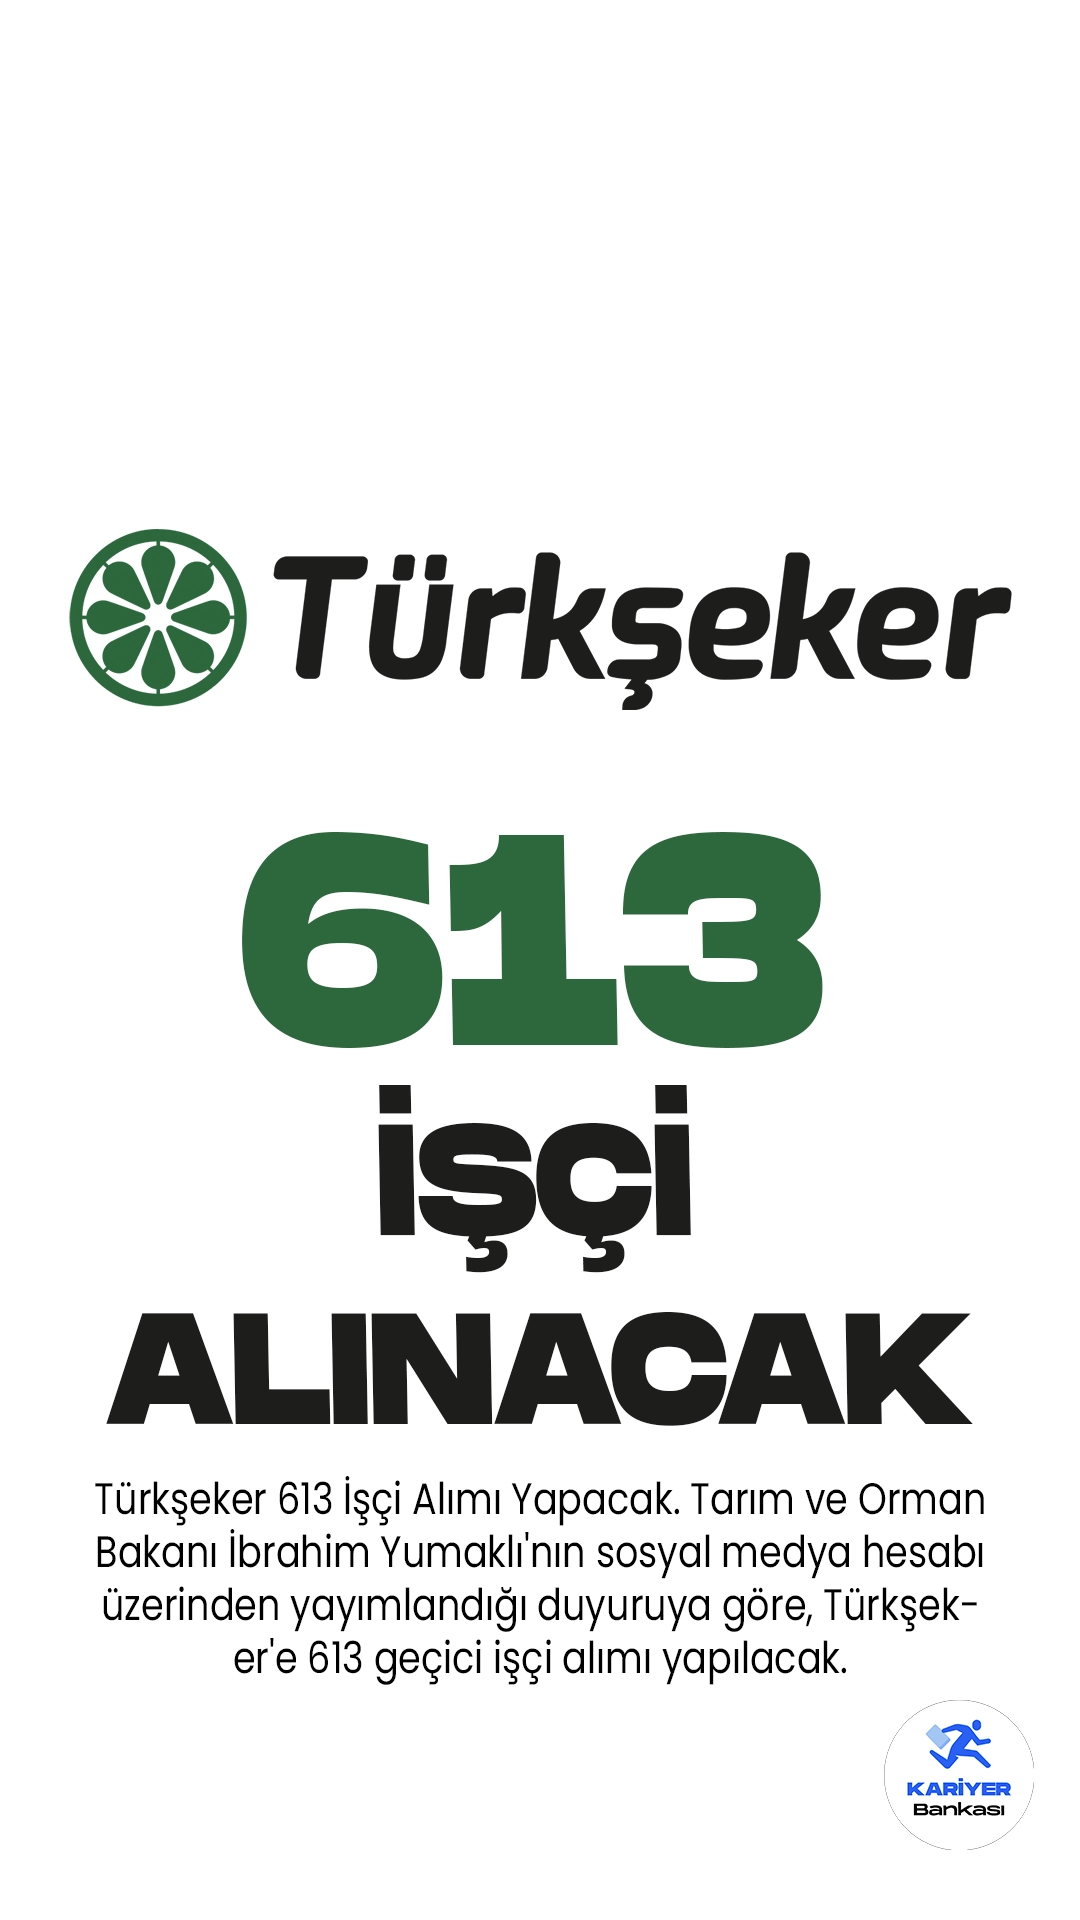 Türkşeker 613 İşçi Alımı Yapacak. Tarım ve Orman Bakanı İbrahim Yumaklı'nın sosyal medya hesabı üzerinden yayımlandığı duyuruya göre, Türkşeker'e 613 geçici işçi alımı yapılacak.